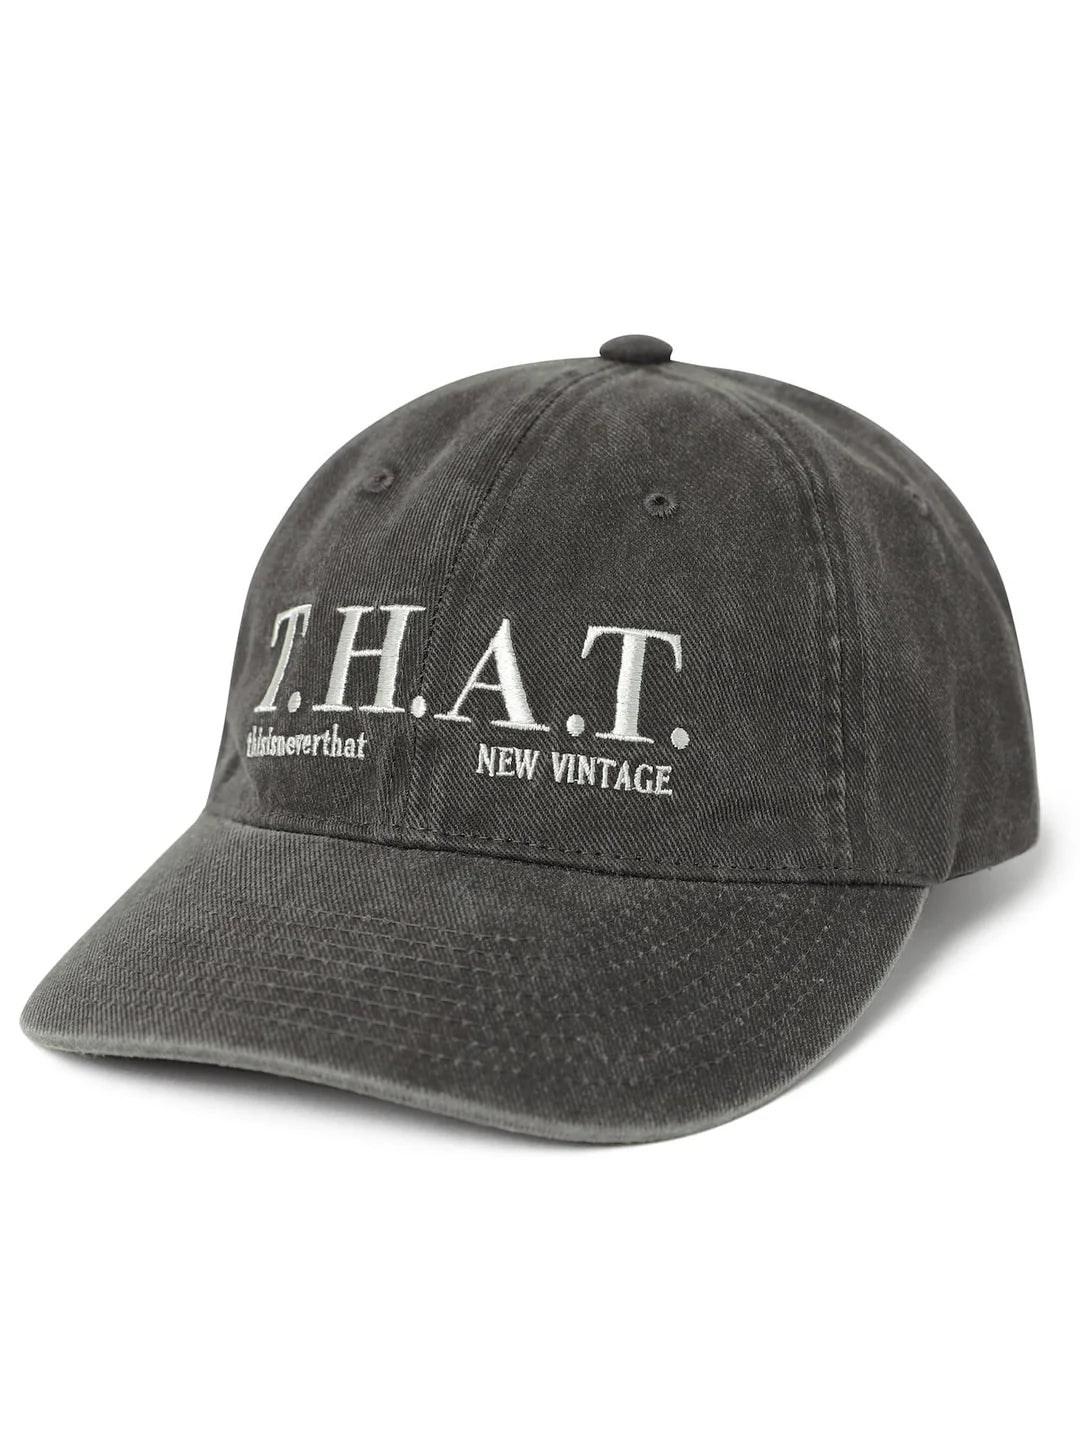 T.H.A.T. Cap